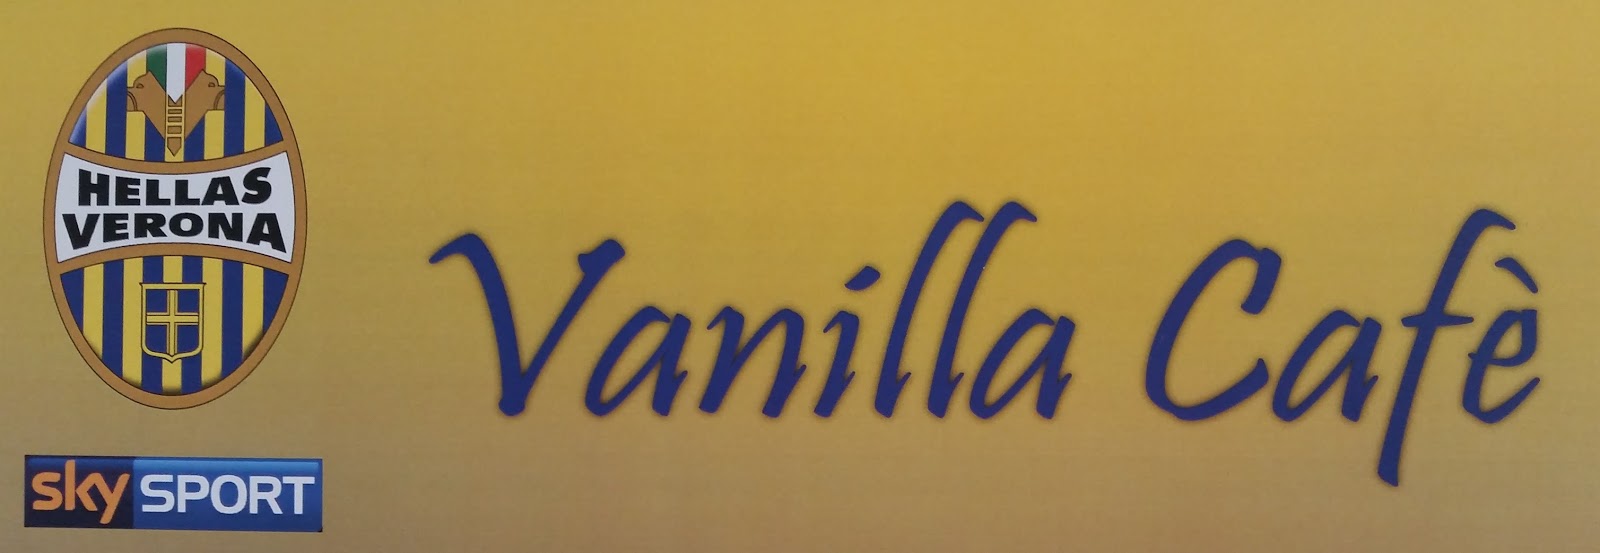 Vanilla Cafè - San Massimo -VR